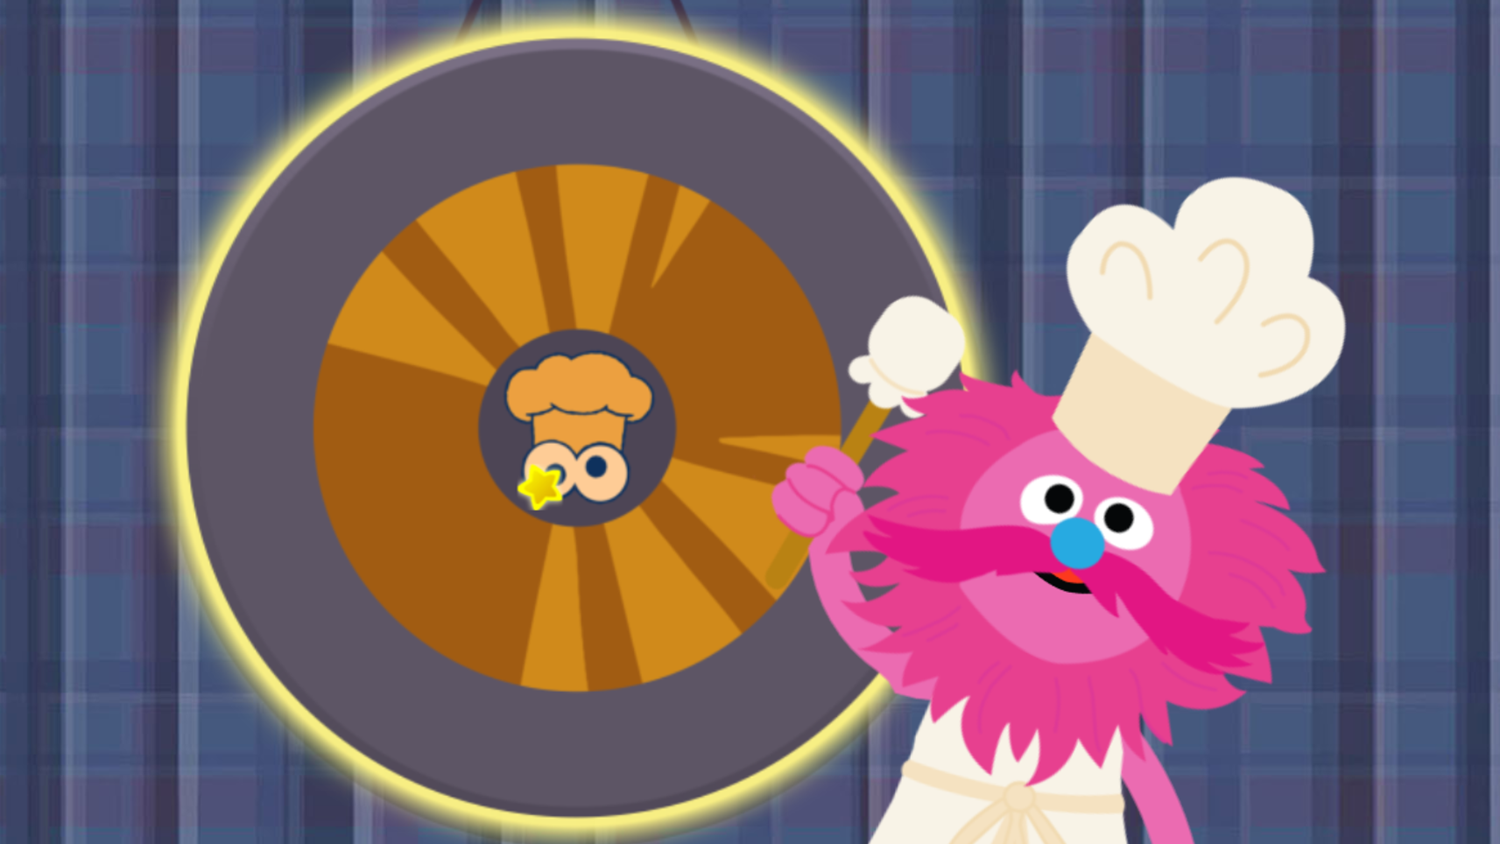 Sesame Street Cookie Monster's Foodie Truck Game Order Complete Screenshot.